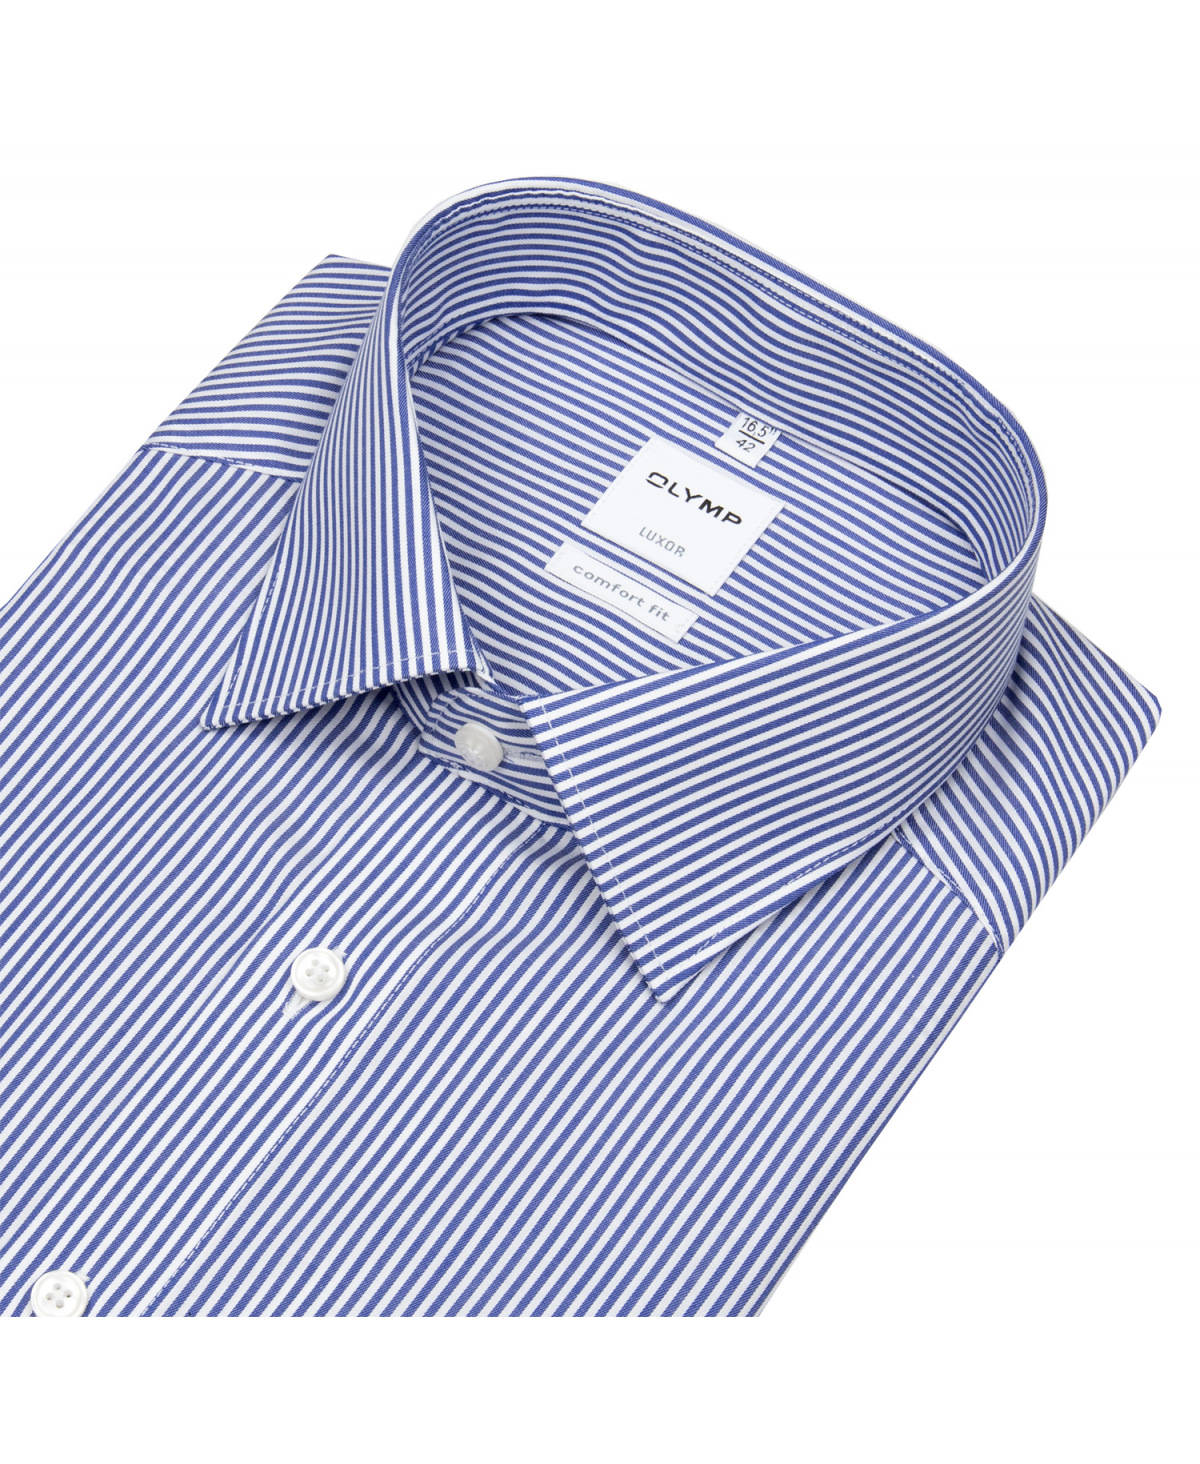 OLYMP Hemd - Luxor Comfort Fit - Twill - Streifen - blau / weiß